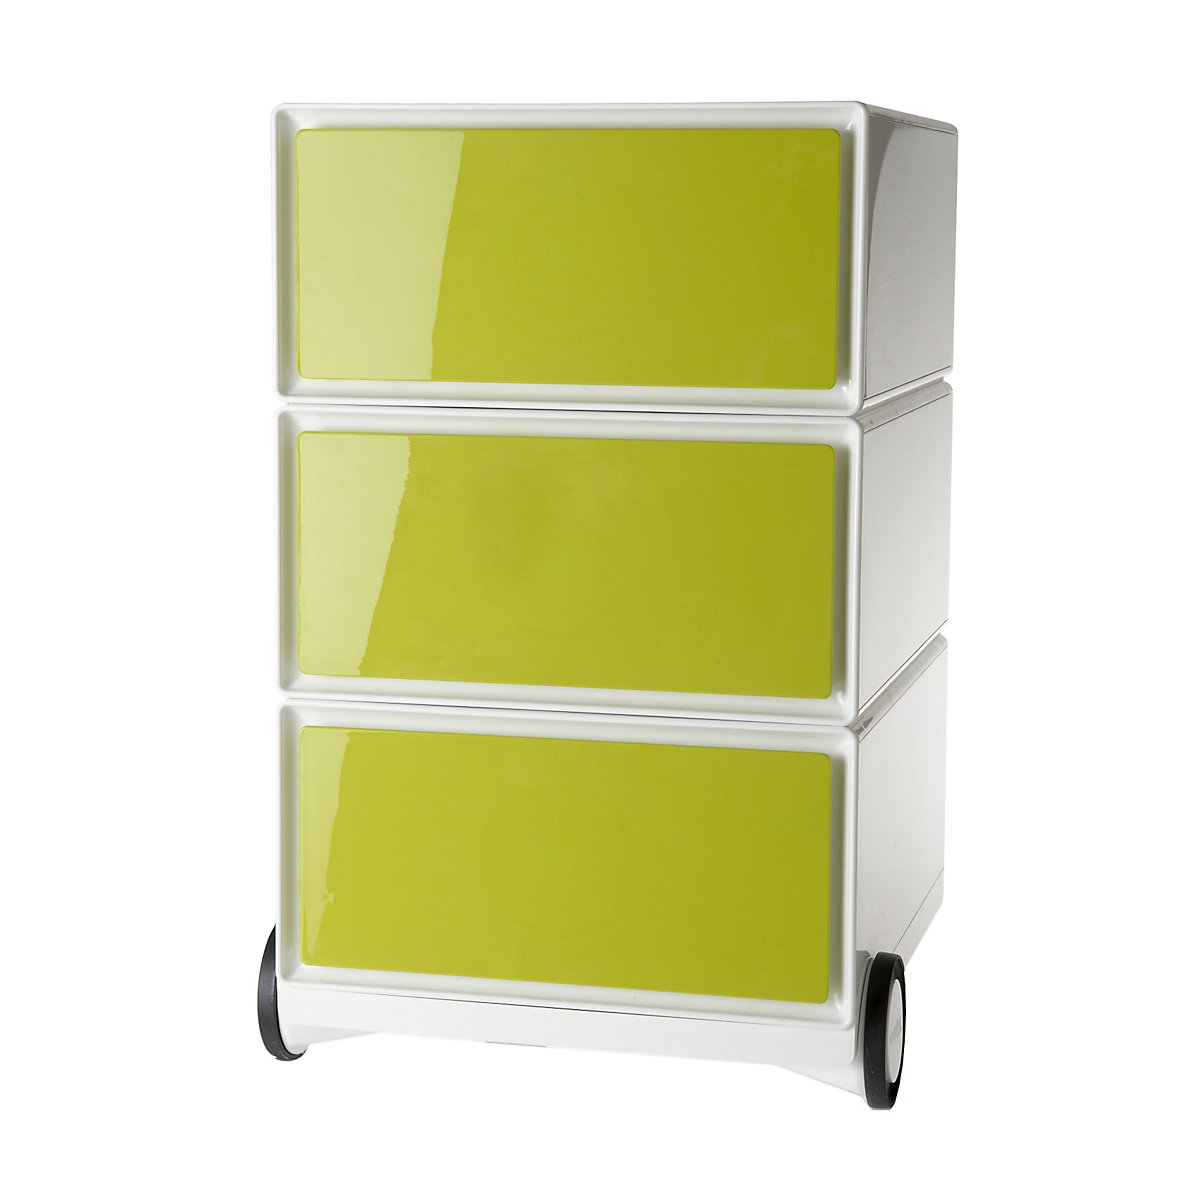 Pokretni ladičar easyBox® – Paperflow, 3 ladice, u bijeloj / zelenoj boji